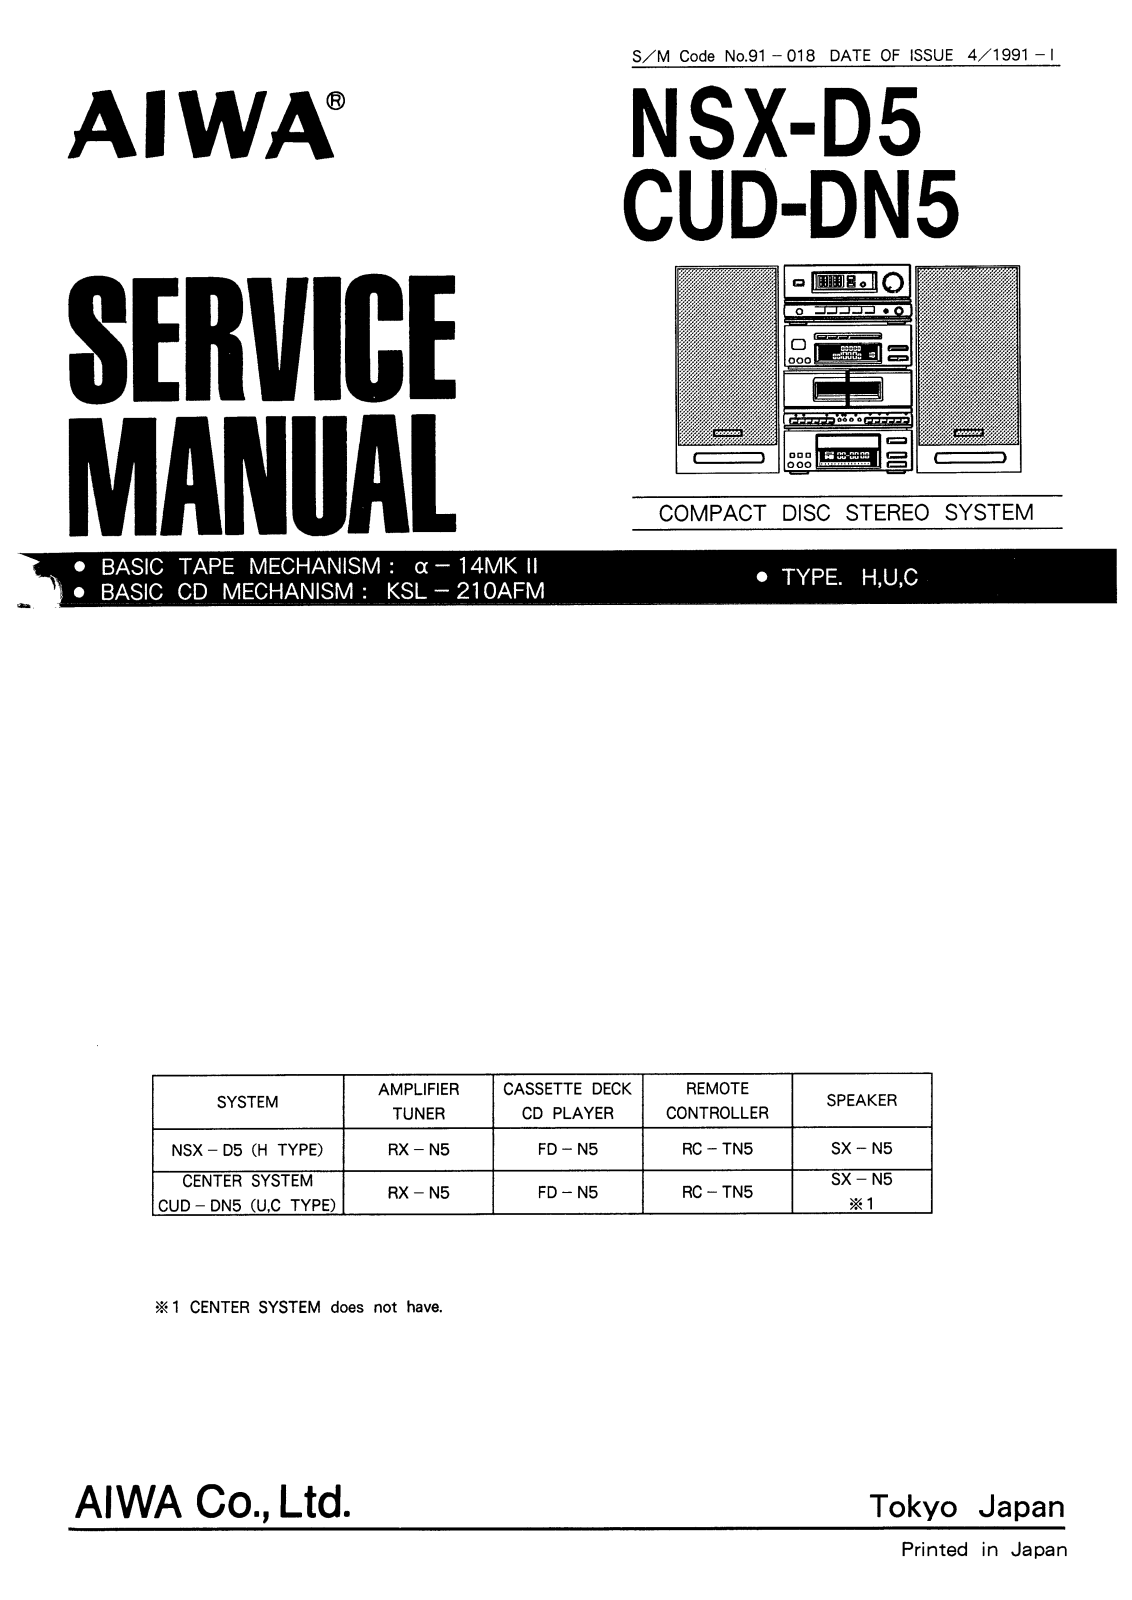 Aiwa nsx d5, cud dn5 Service Manual